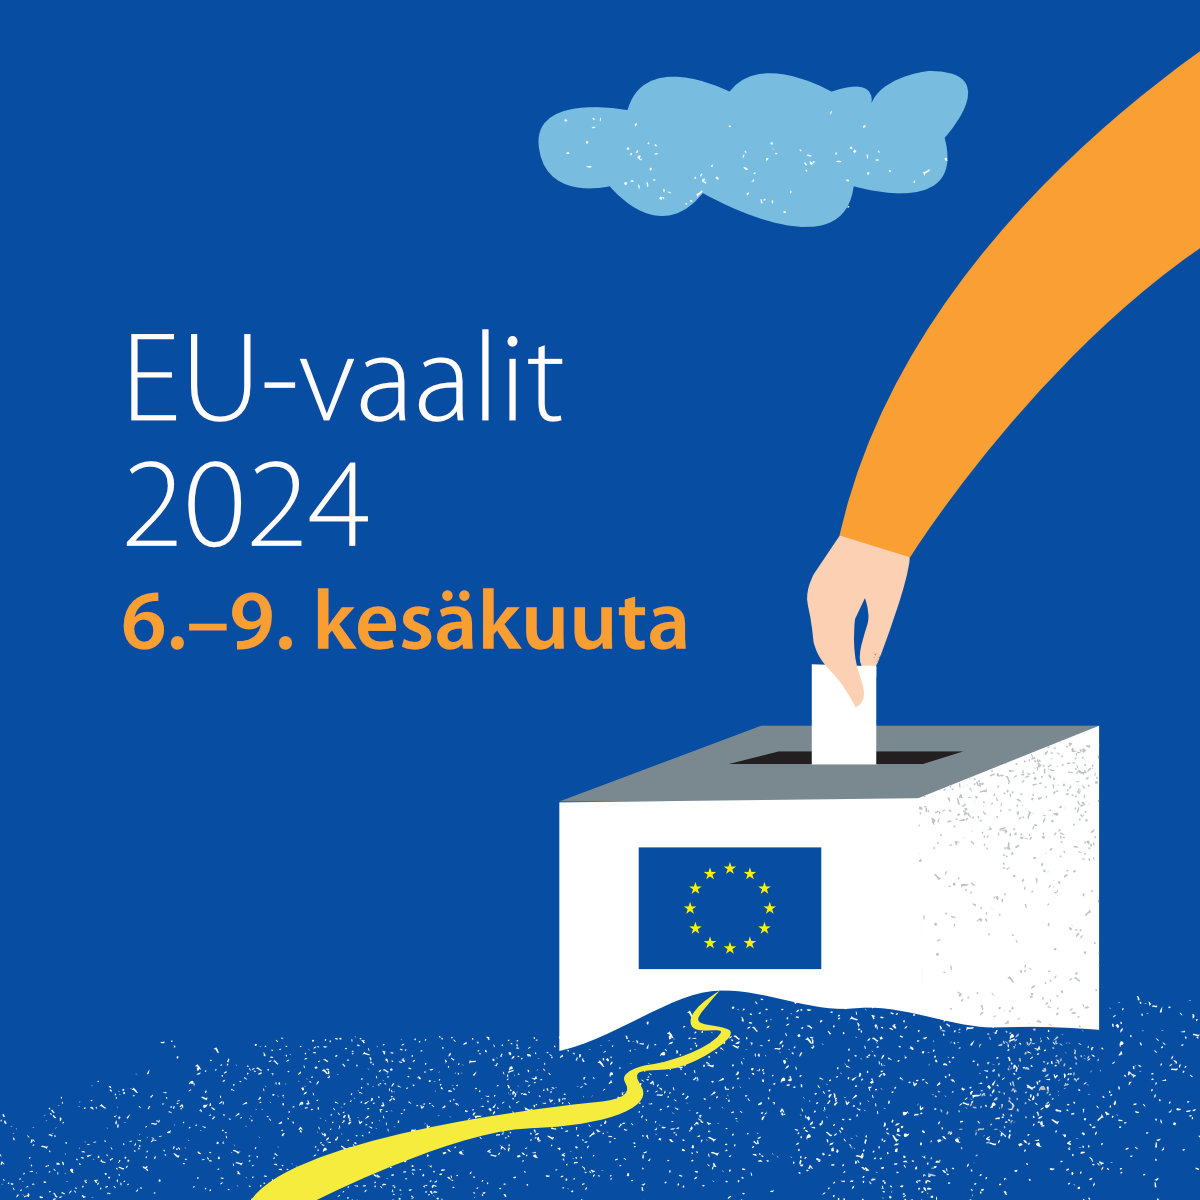 EU-vaalit 2024 - Square